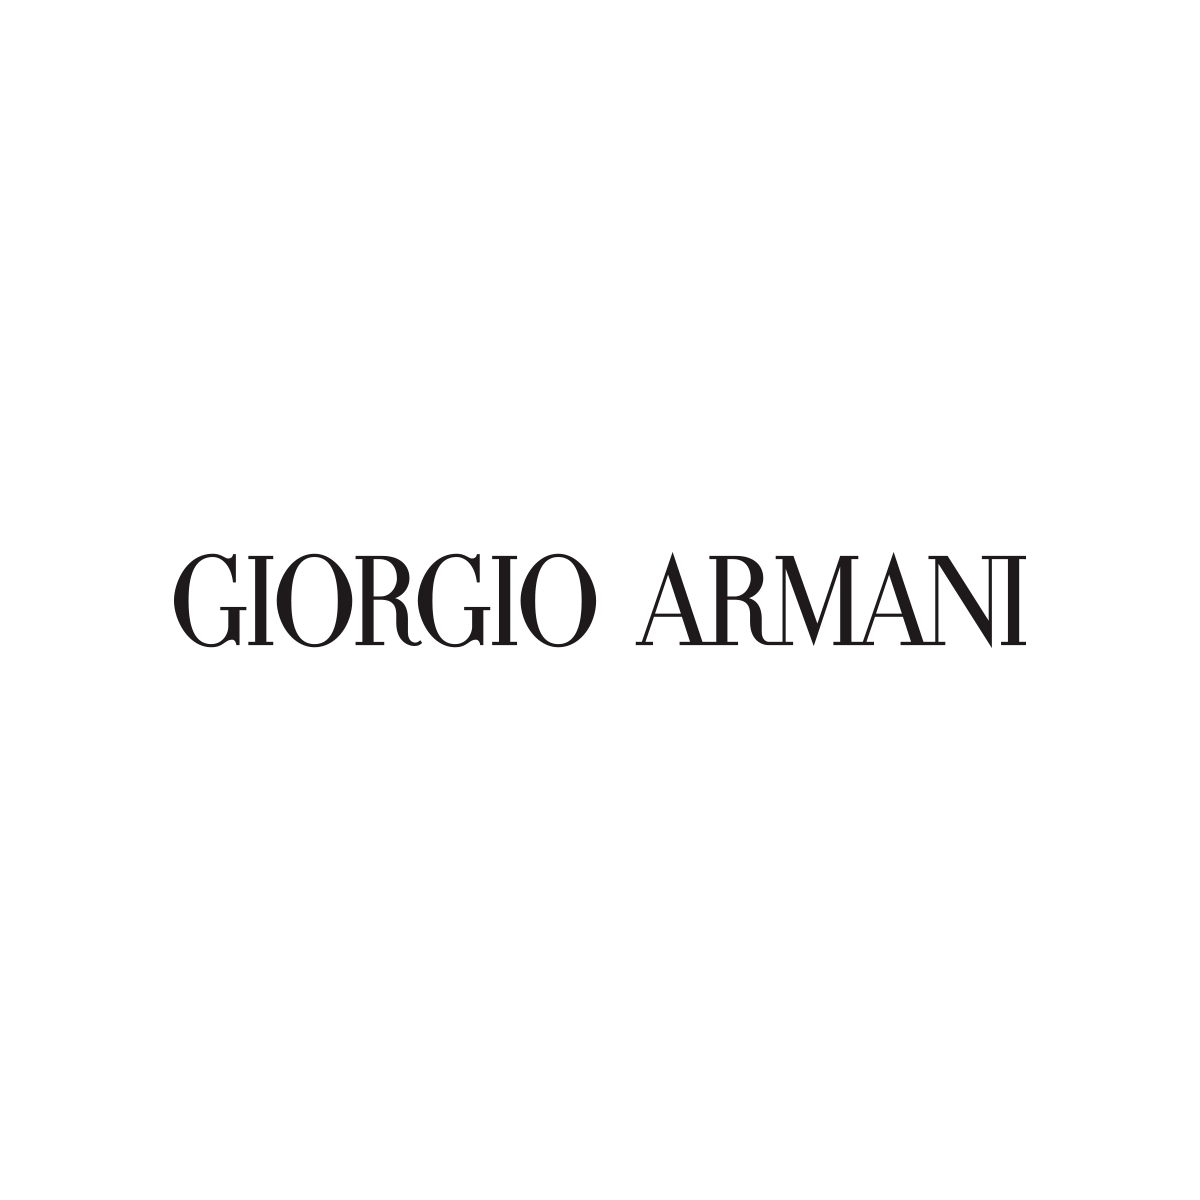 Giorgio Armani - Men's Clothing Stores